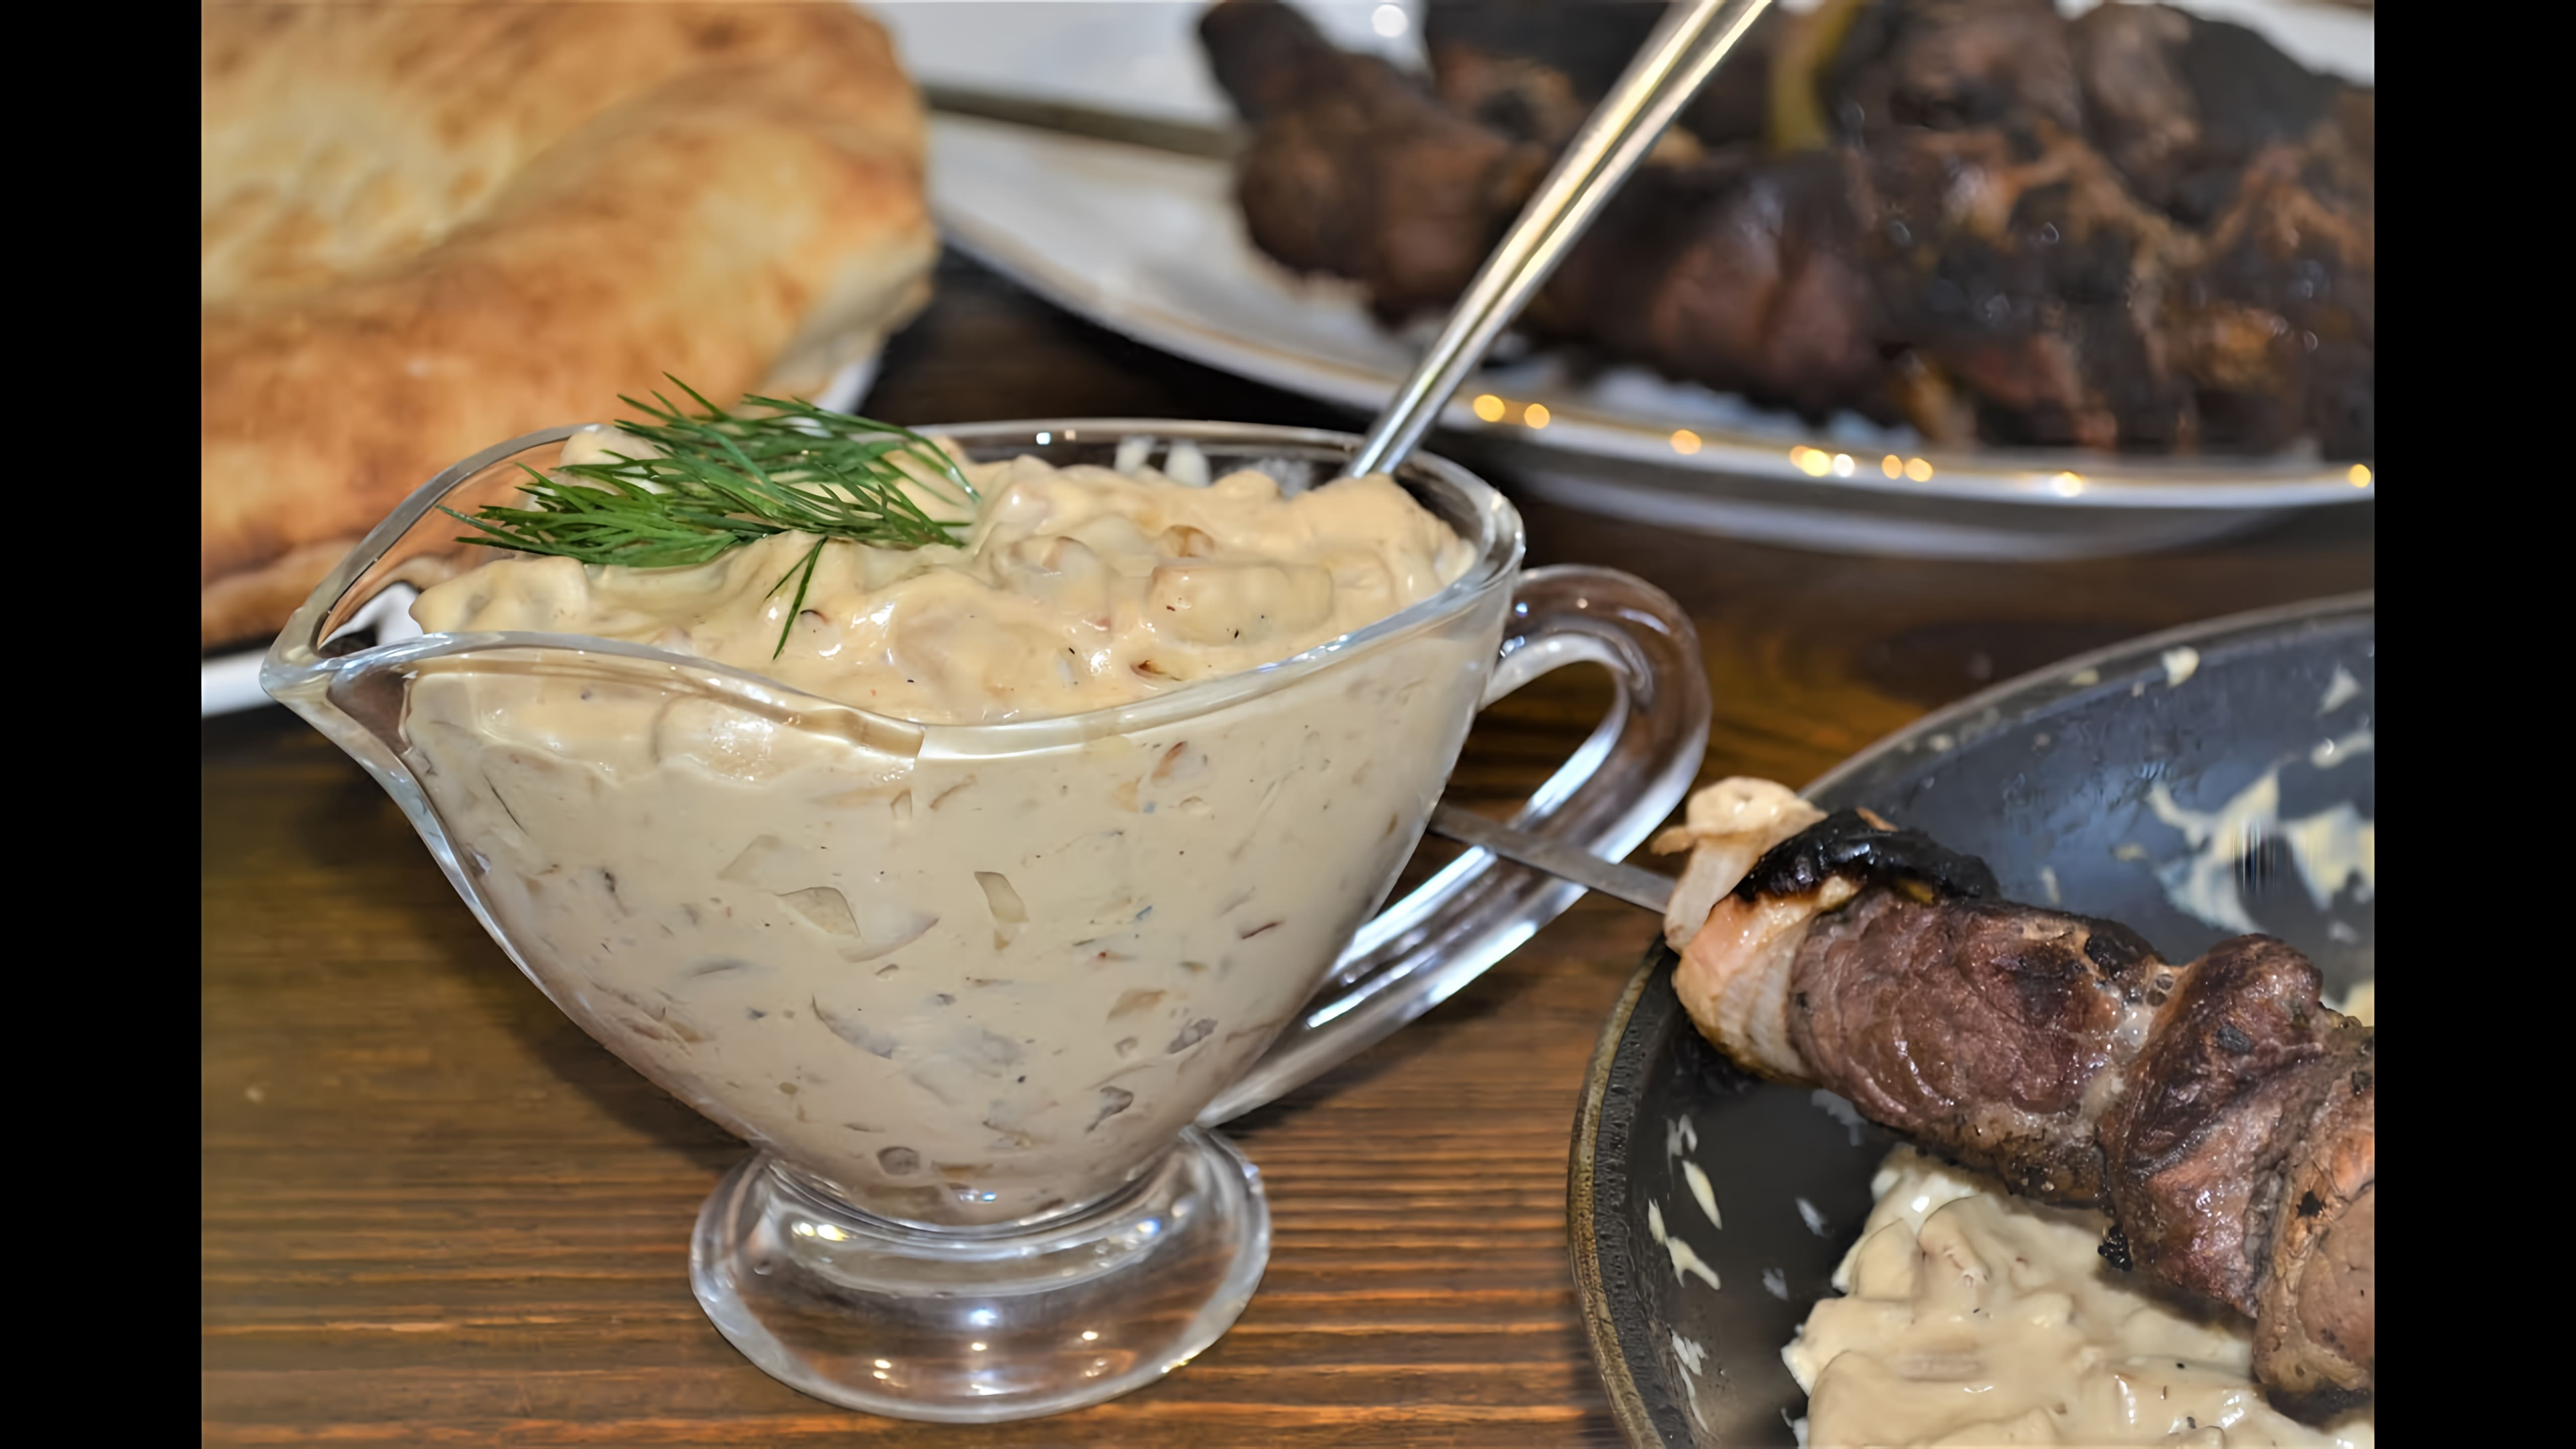 Видео: Сливочно-грибной соус.Нежный,ароматный,отлично подойдет к любому блюду!